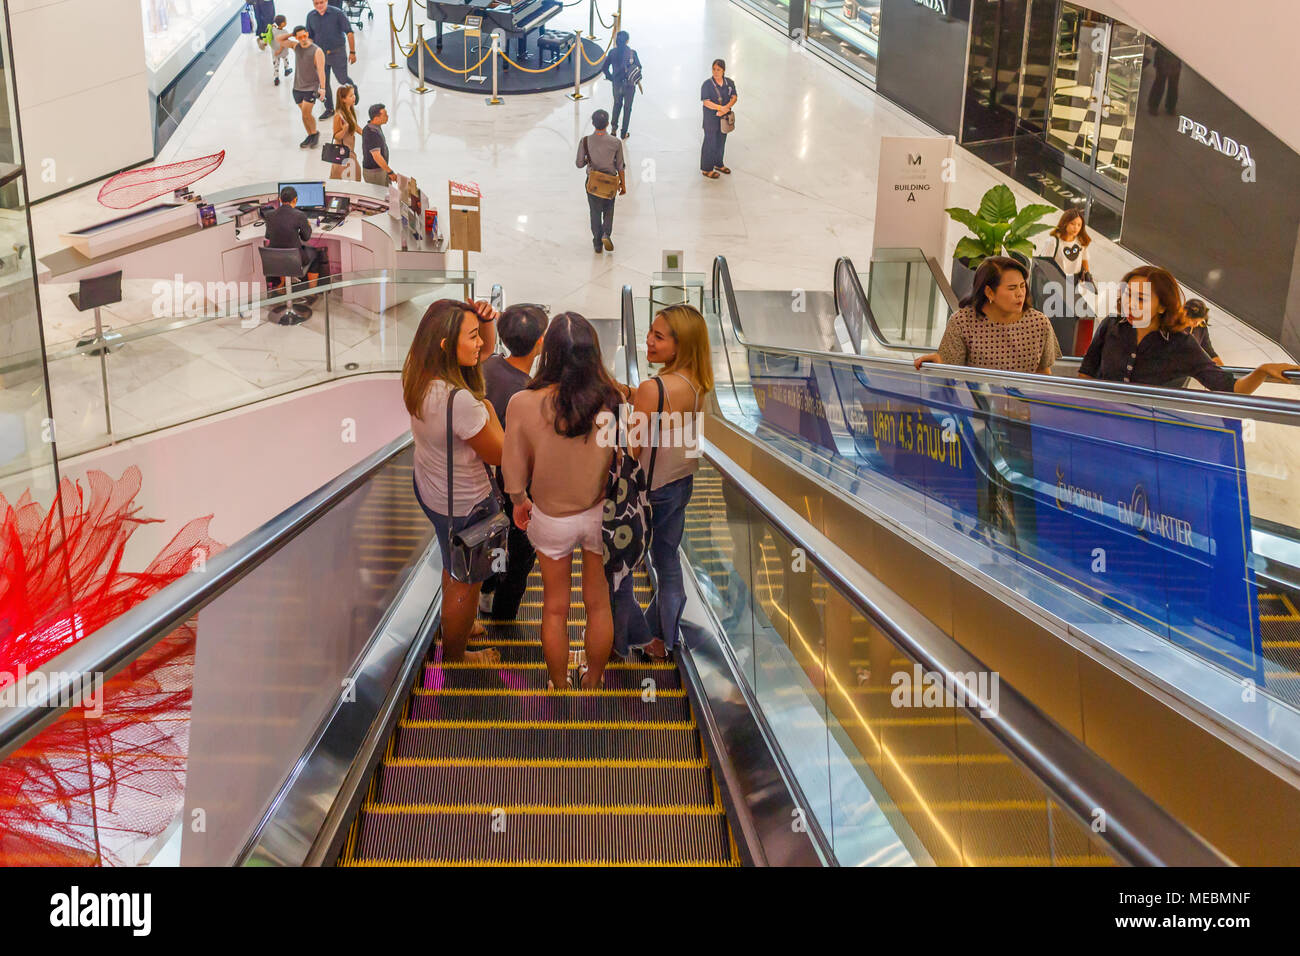 La gente ascendente y descendente de escaleras, Em Quartier shopping mall, Bangkok, Tailandia Foto de stock